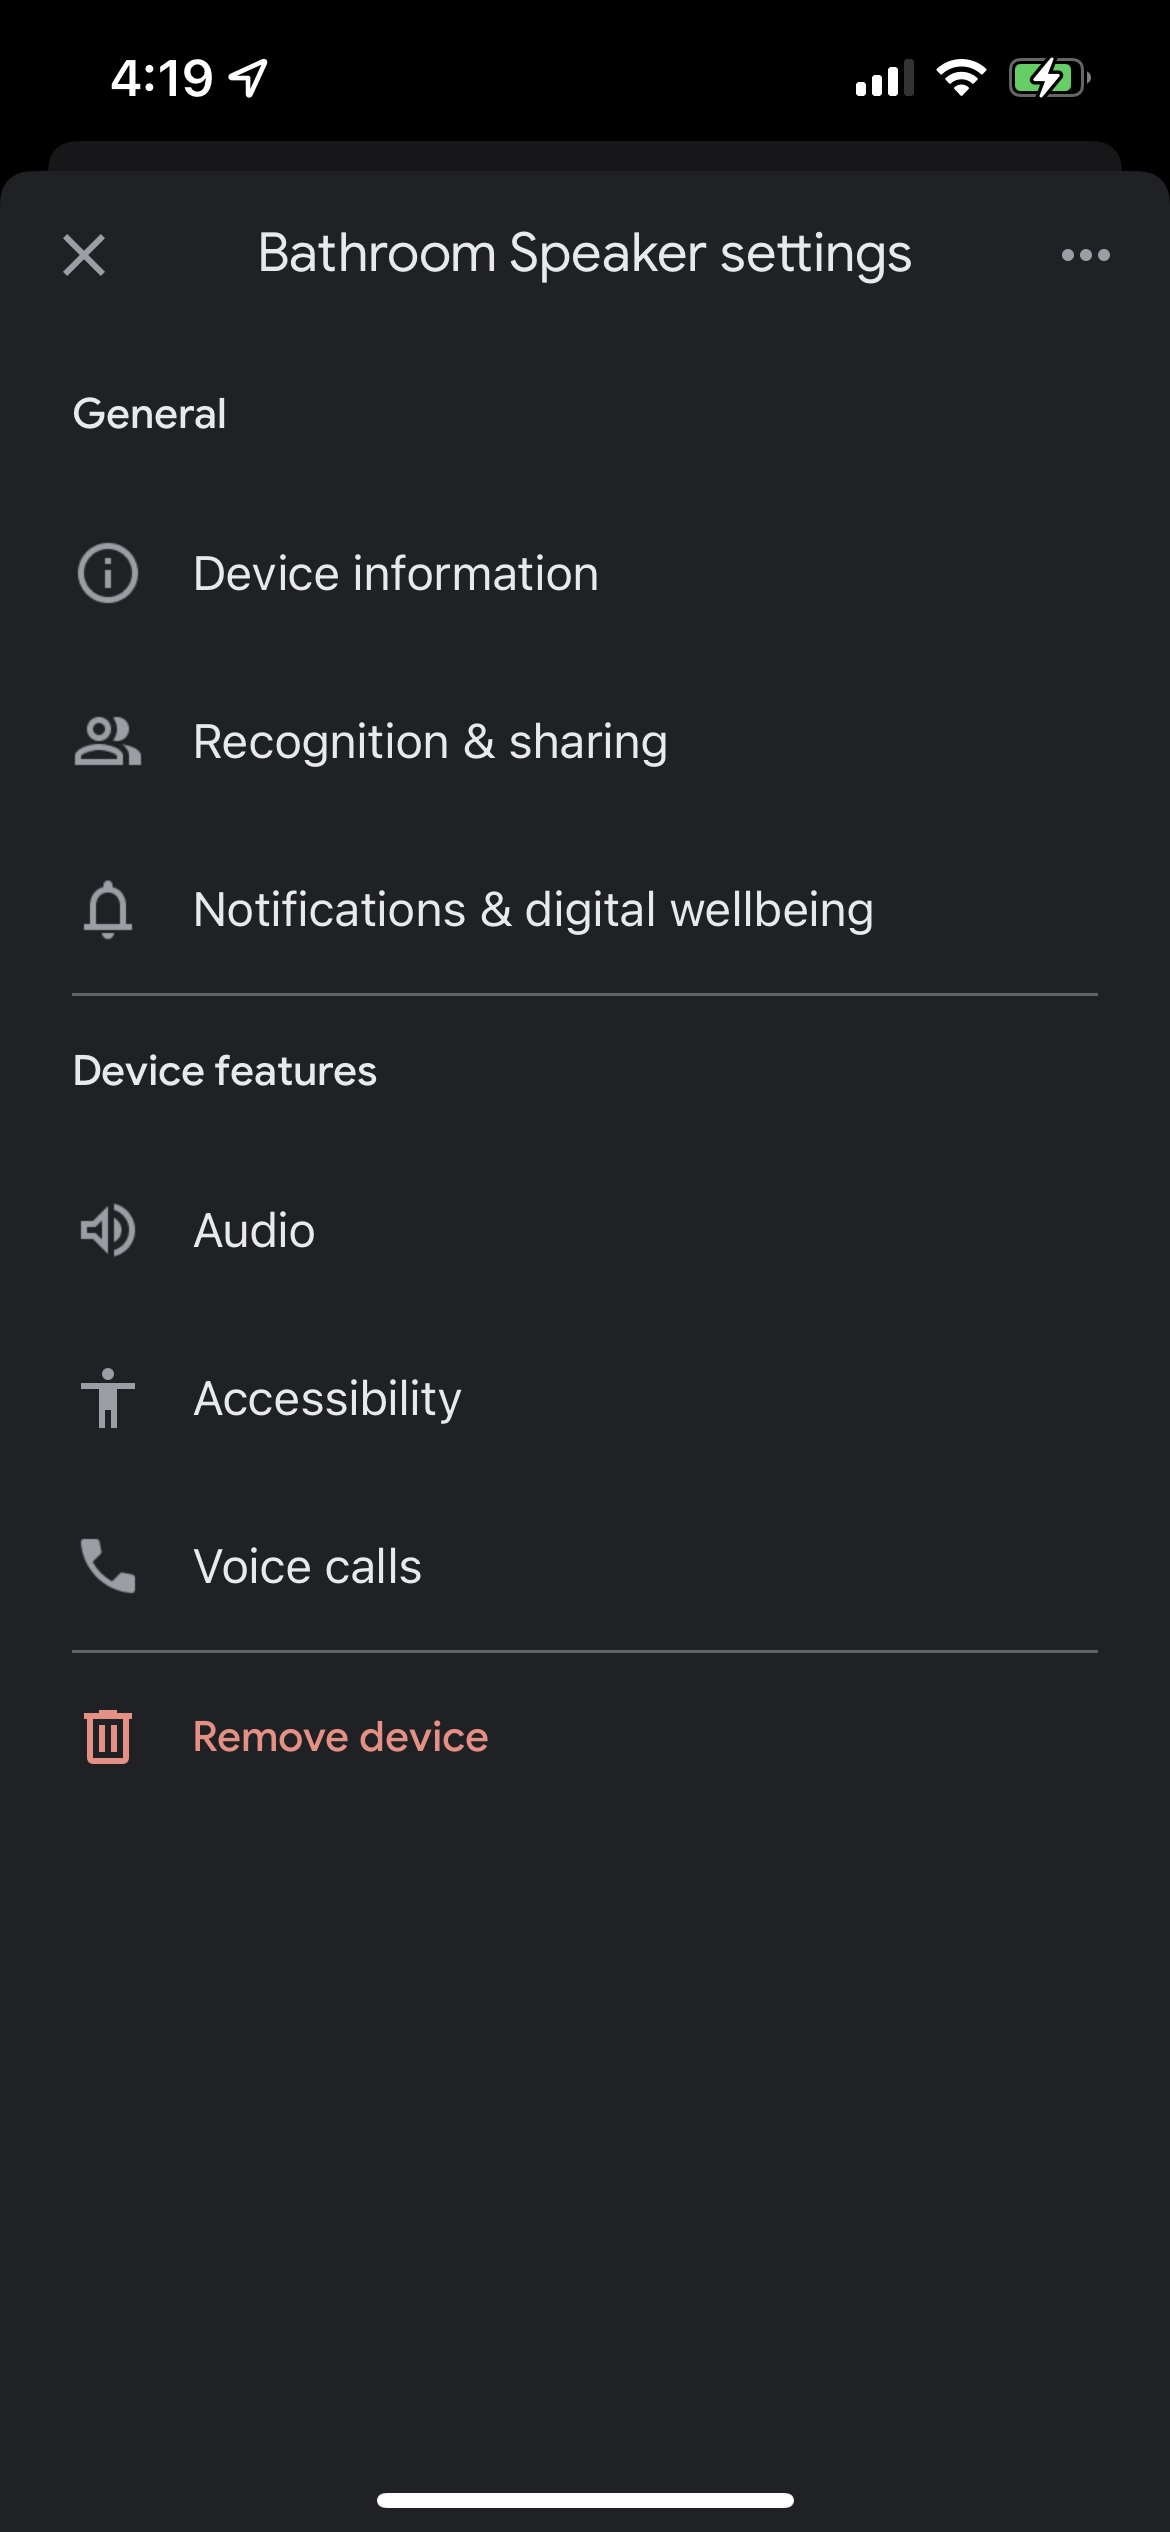 Speaker settings in the Google Home app